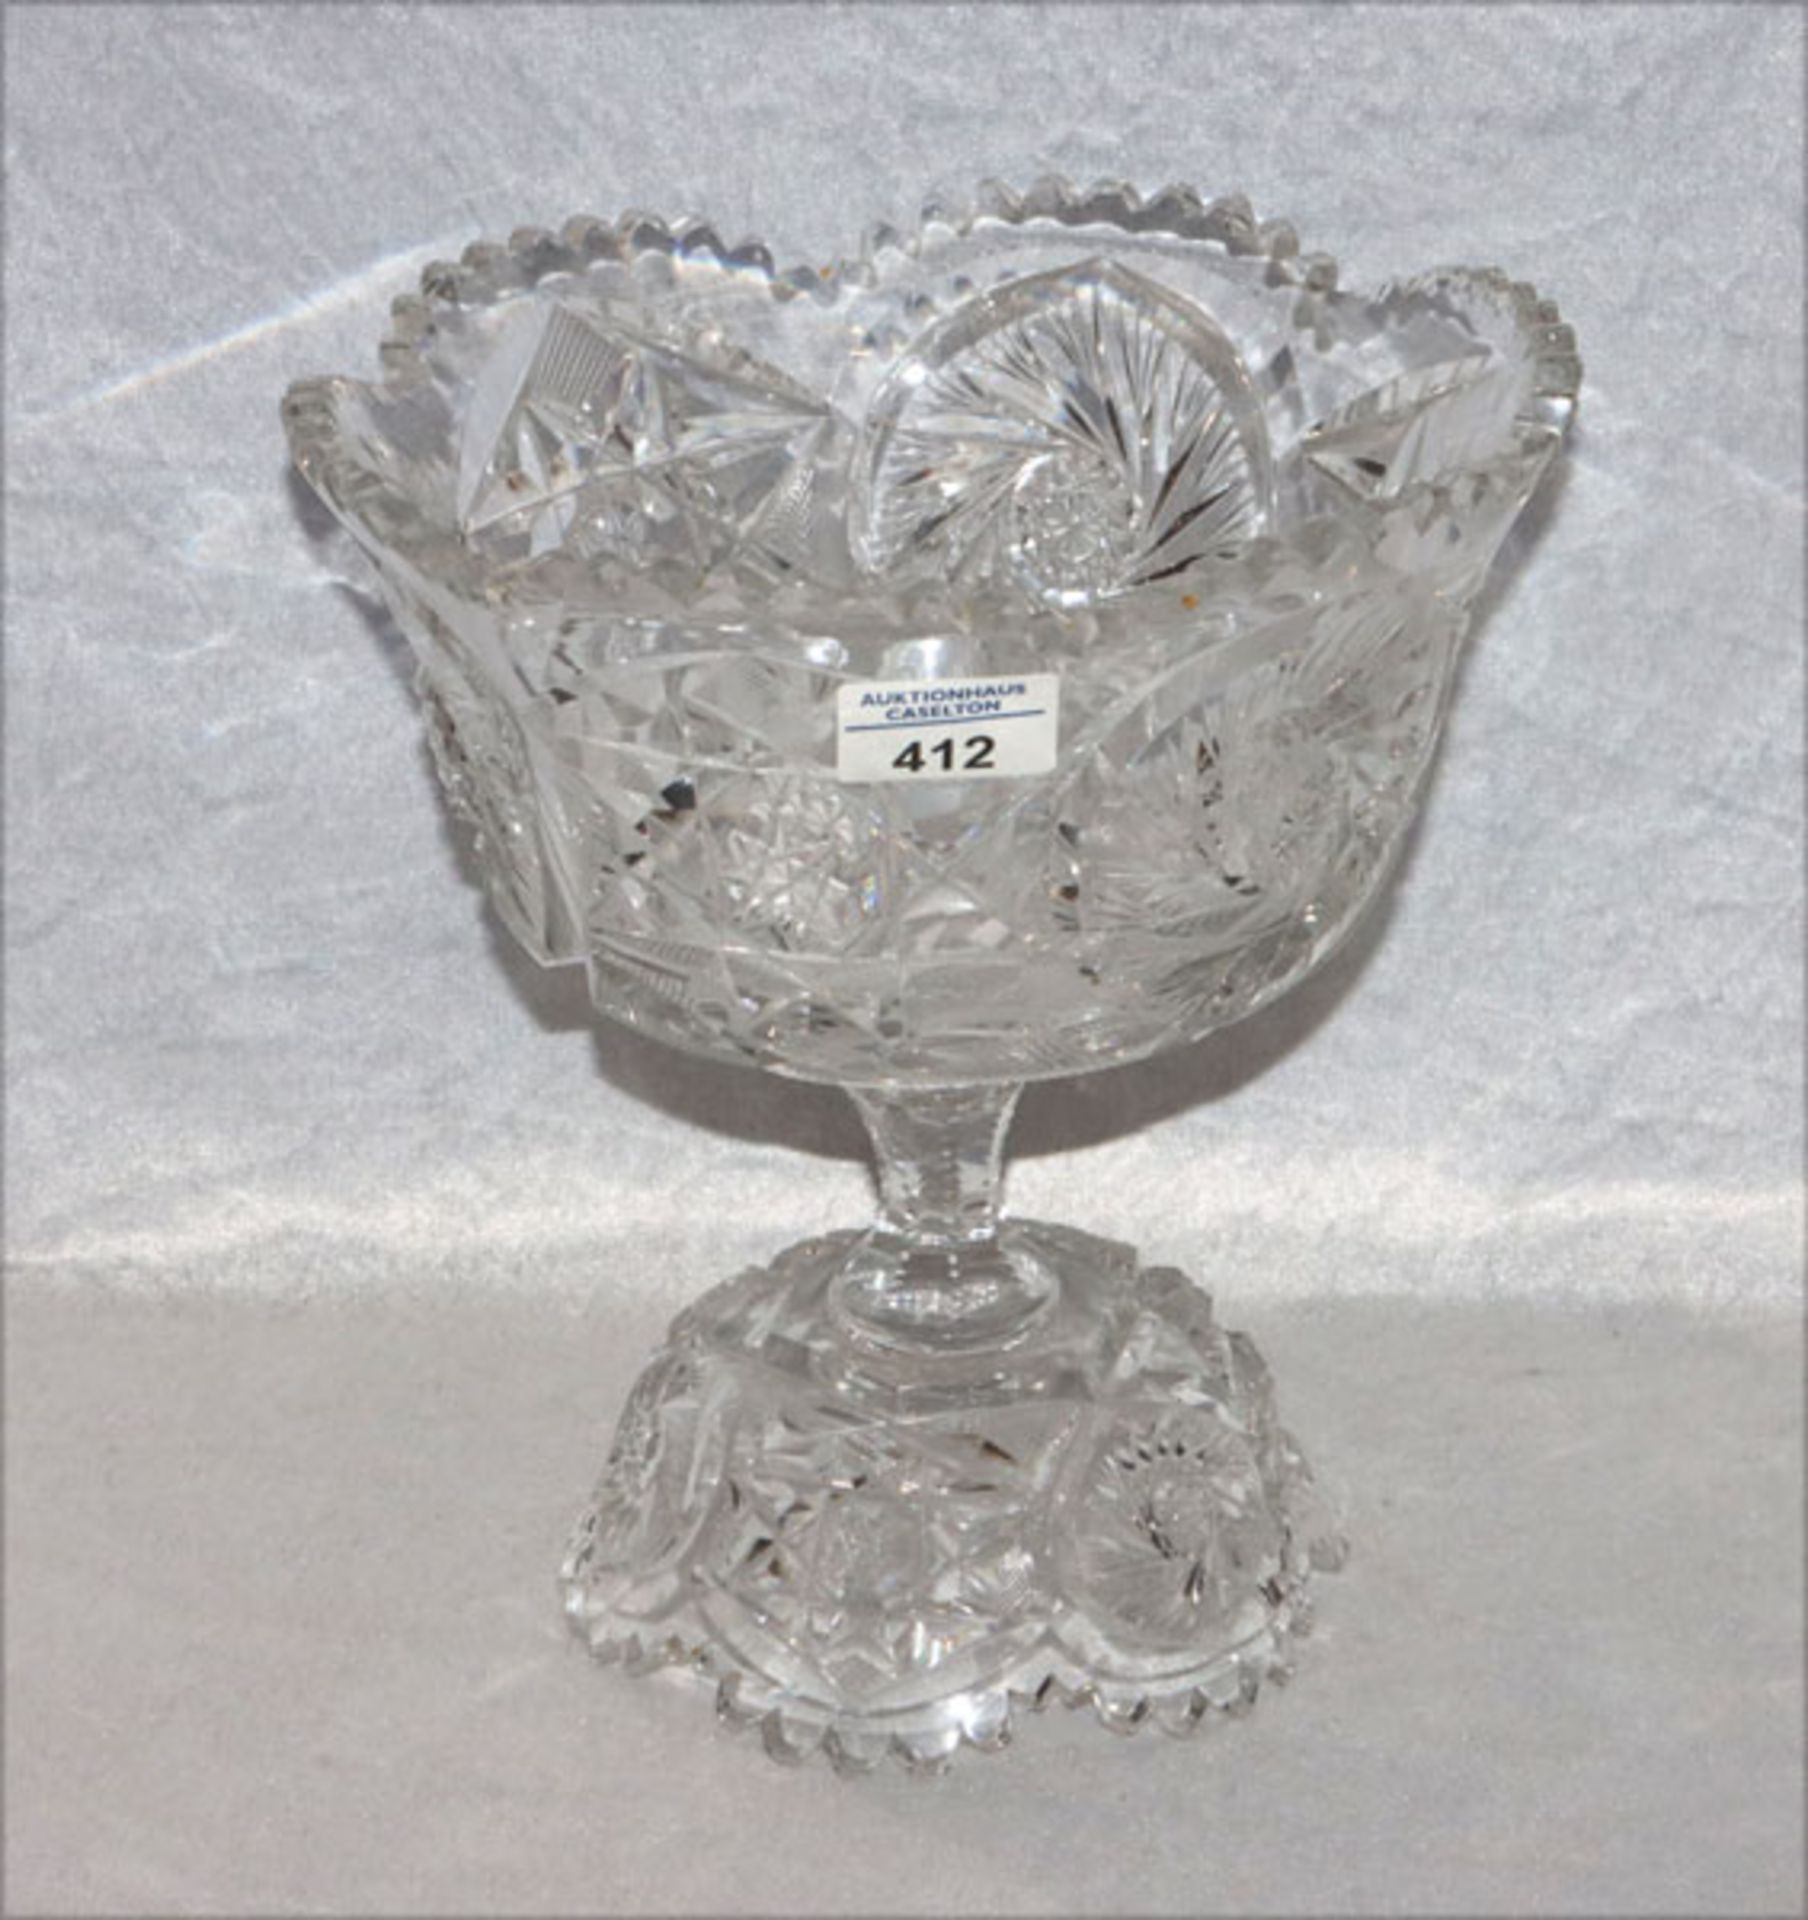 Kristall Aufsatzschale, 2-teilig, feines Schliffdekor, H 25 cm, D 24 cm, Gebrauchsspuren